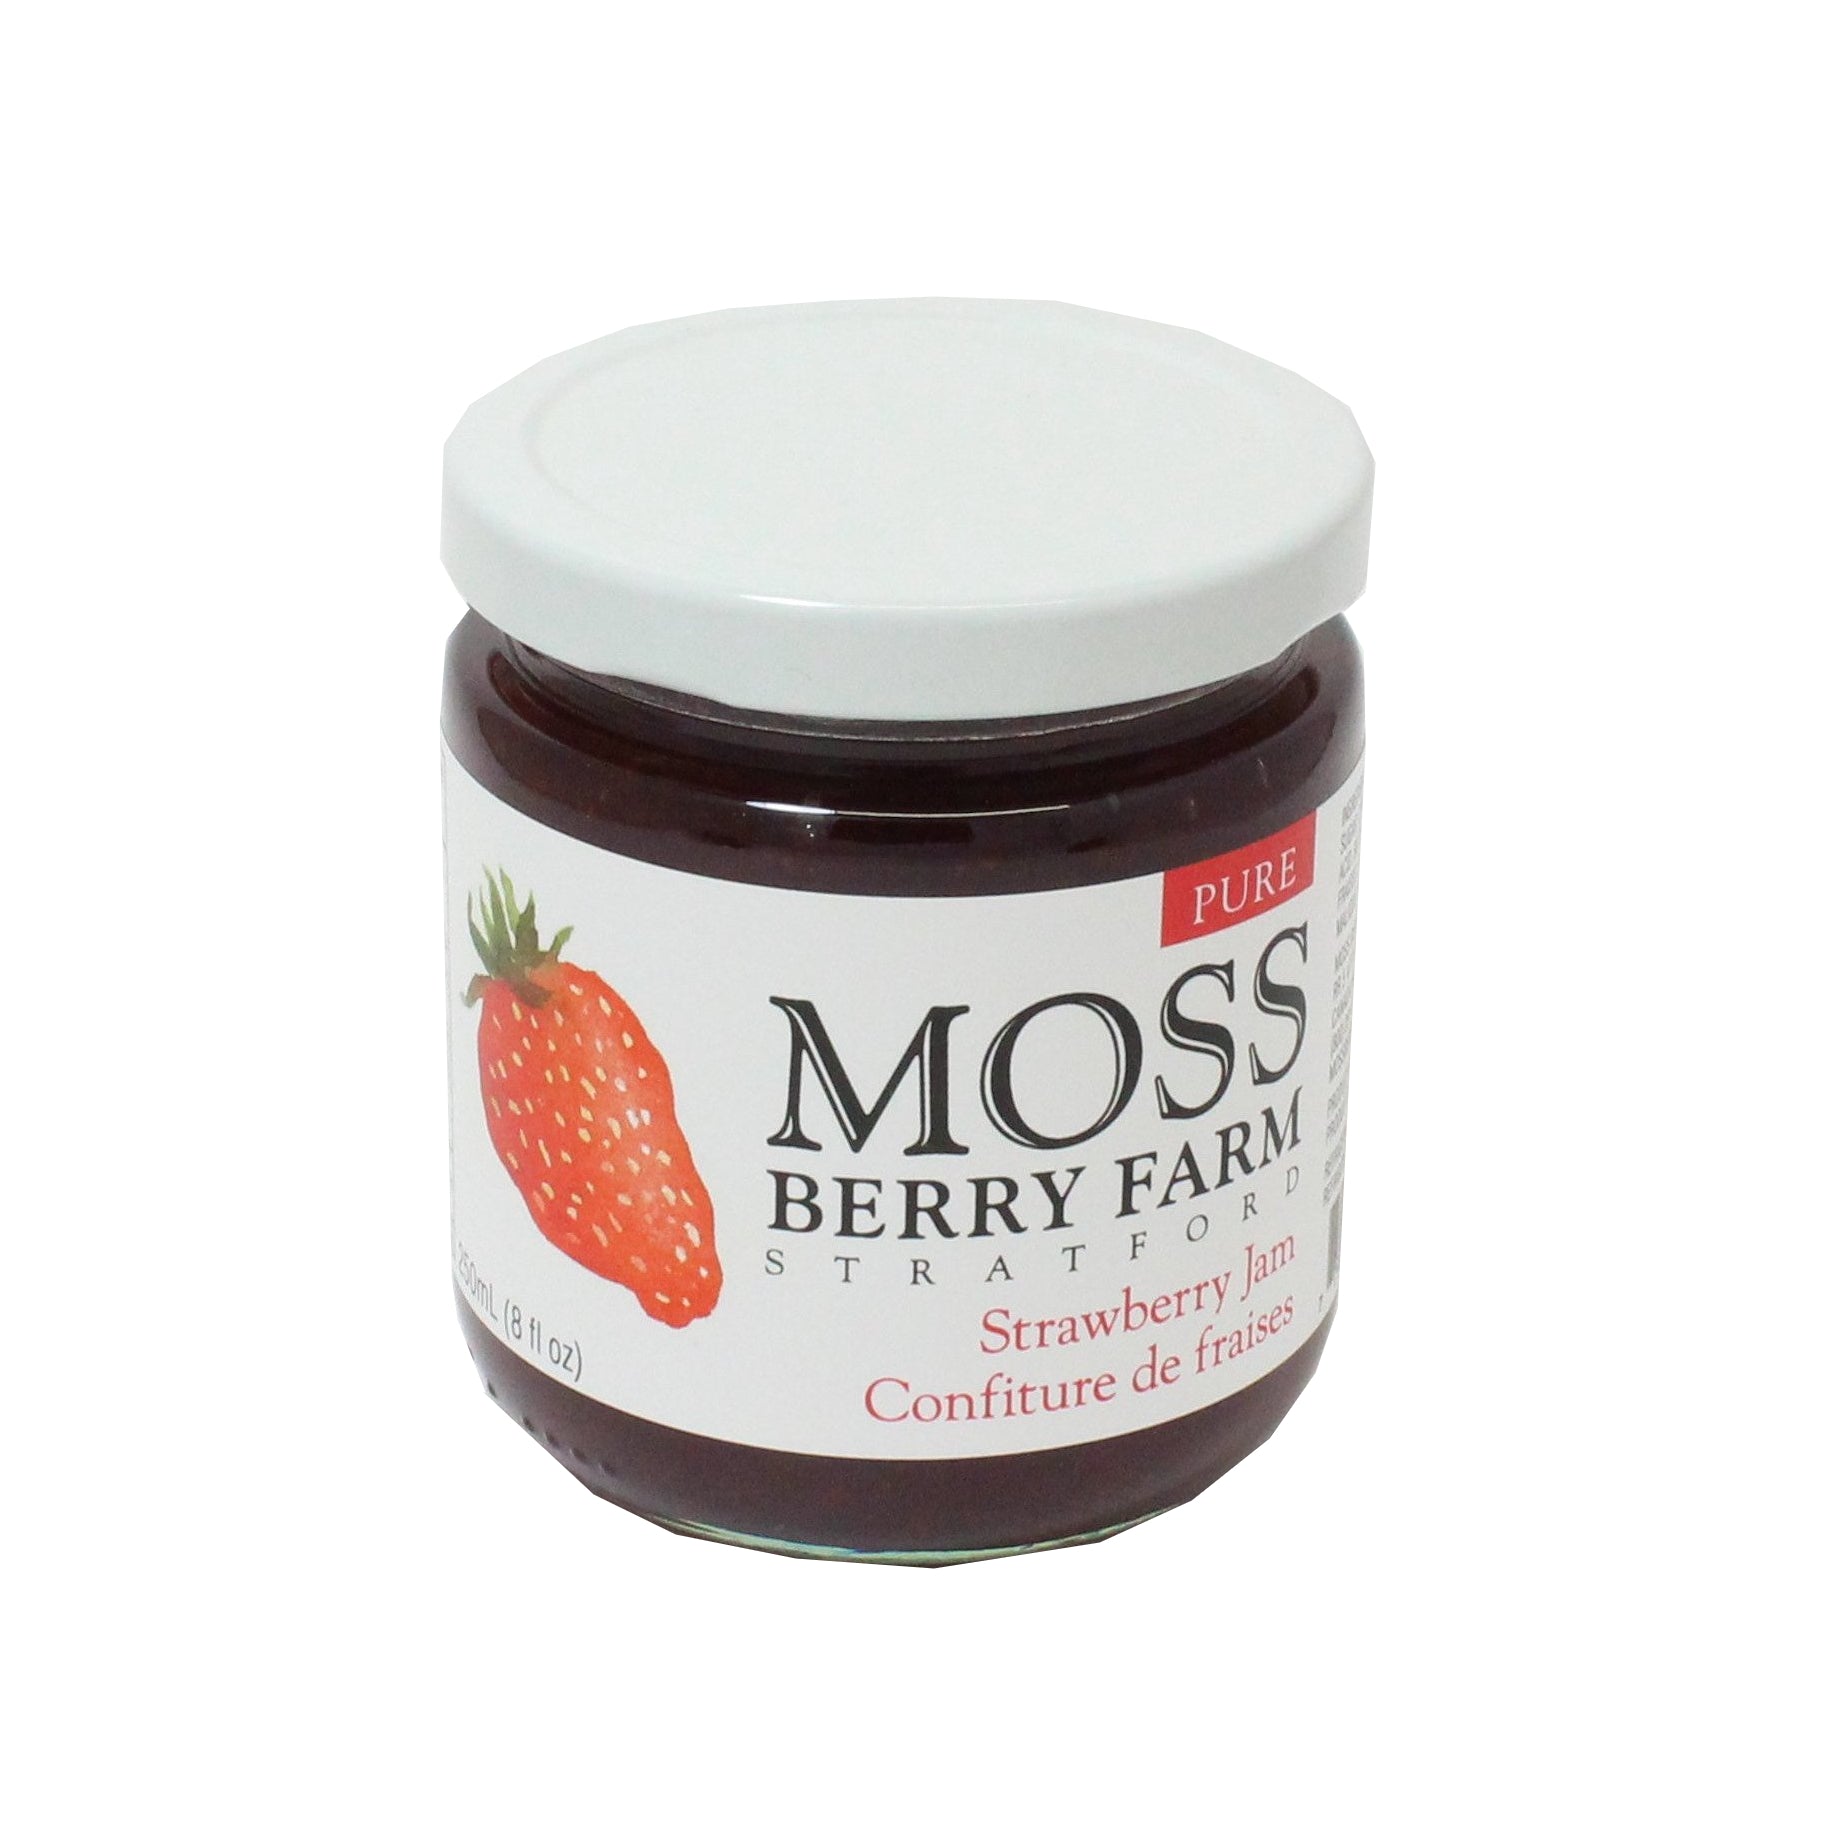 Moss Berry Farm Jam Strawberry